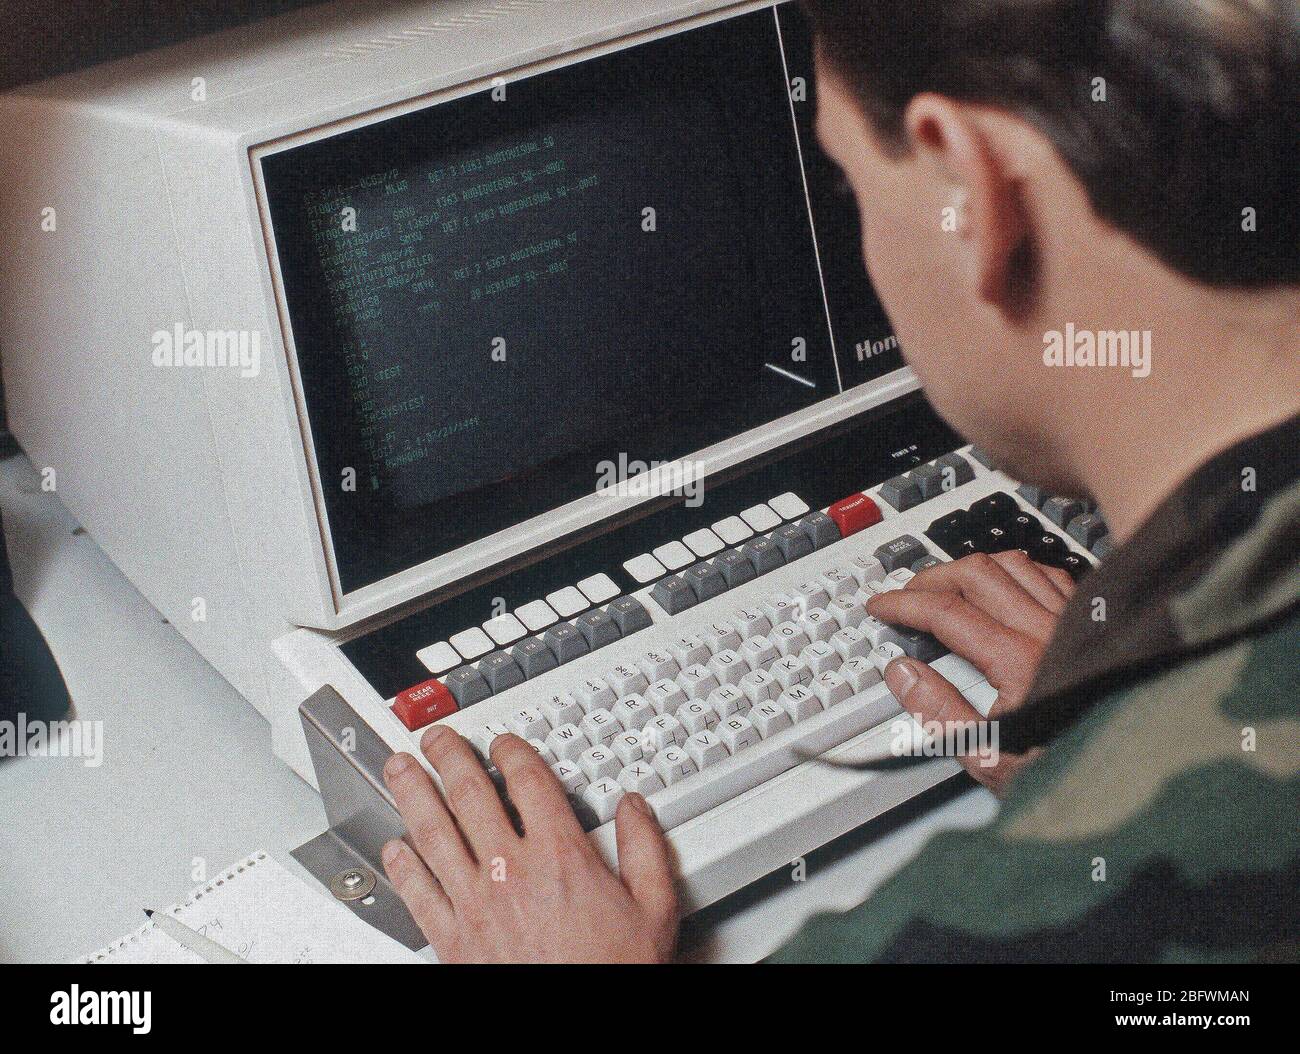 Un aviatore comanda un terminale di computer all'interno del personale mobile ditta van durante l'esercizio dello spirito di squadra '85. Foto Stock